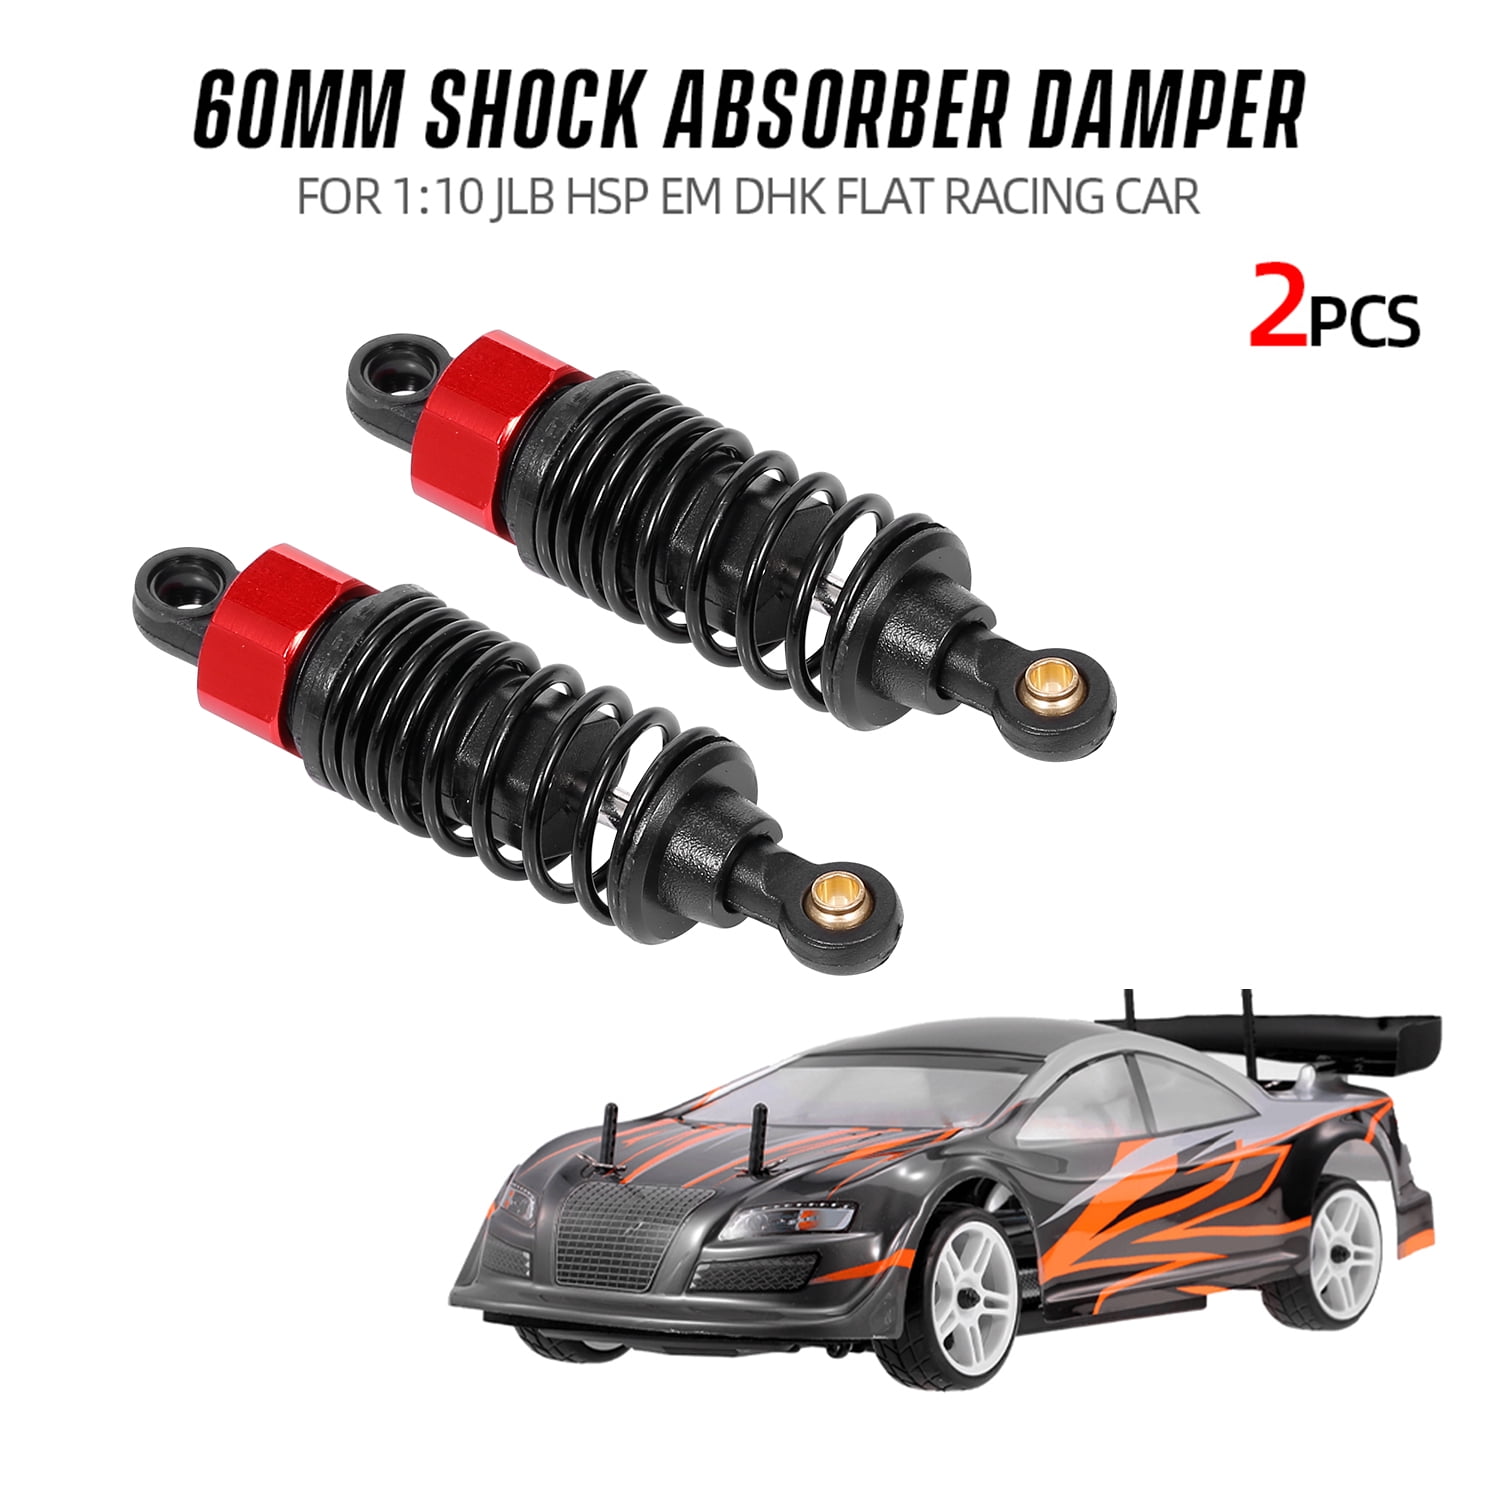 2pcs Shock Absorber Damper 60mm RC Car Parts for 1:10 JLB HSP EM DHK HPI S1A5 